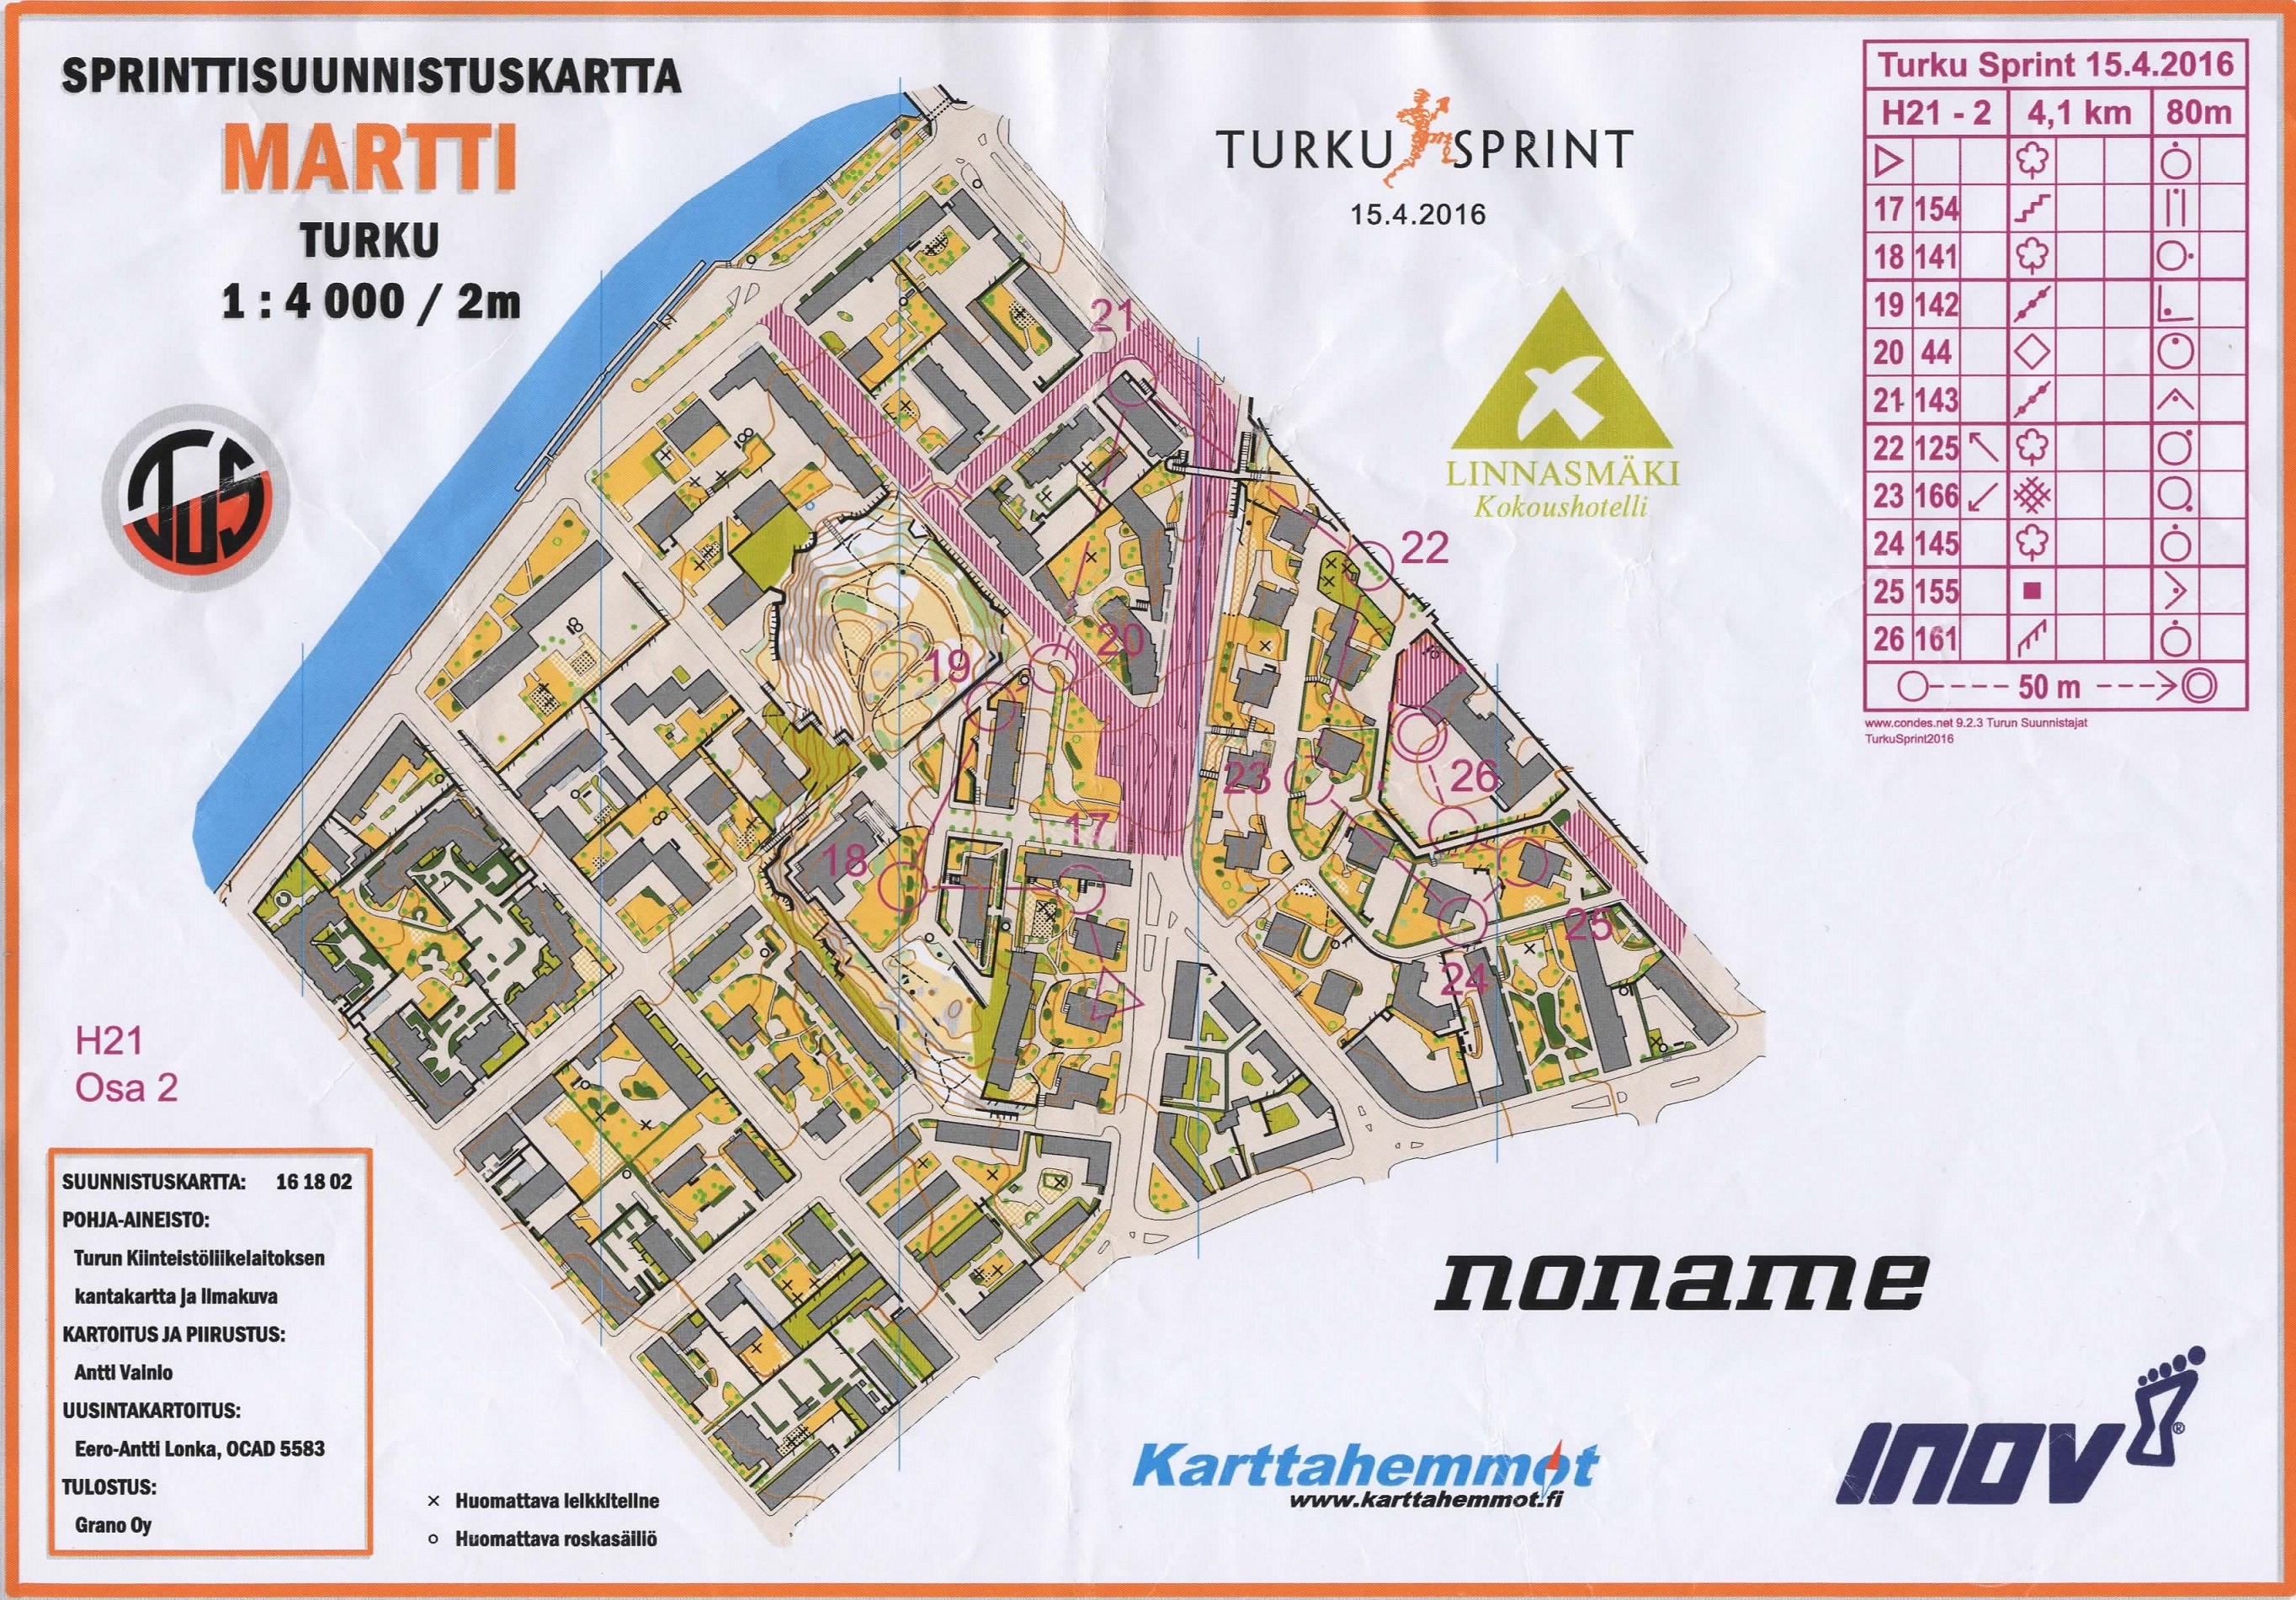 Turku Sprint, part 2 (15.04.2016)